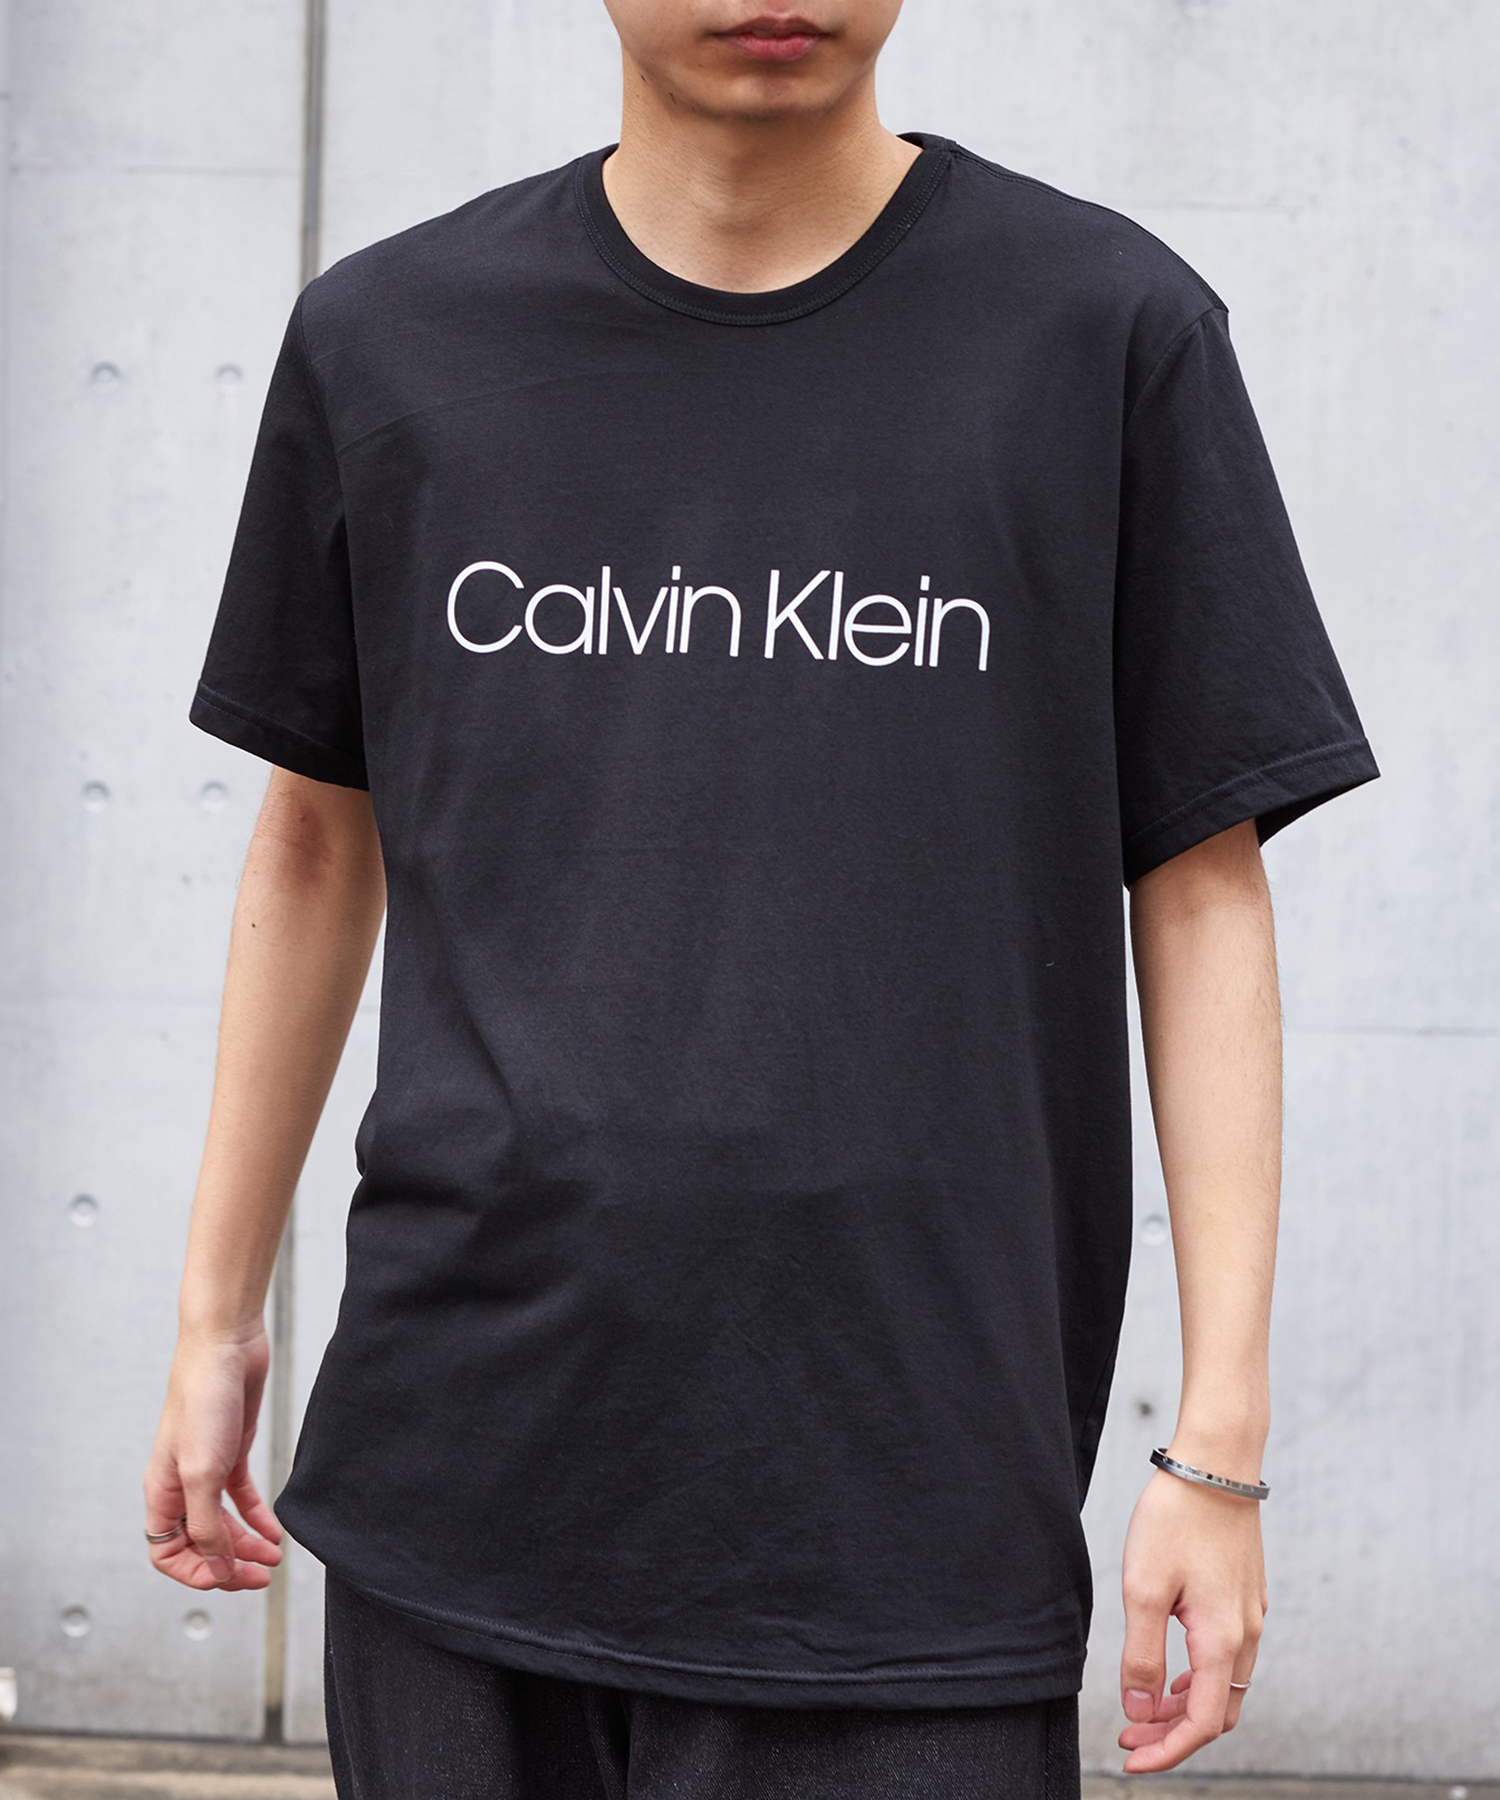 Calvin Klein Front Logo Tee White at